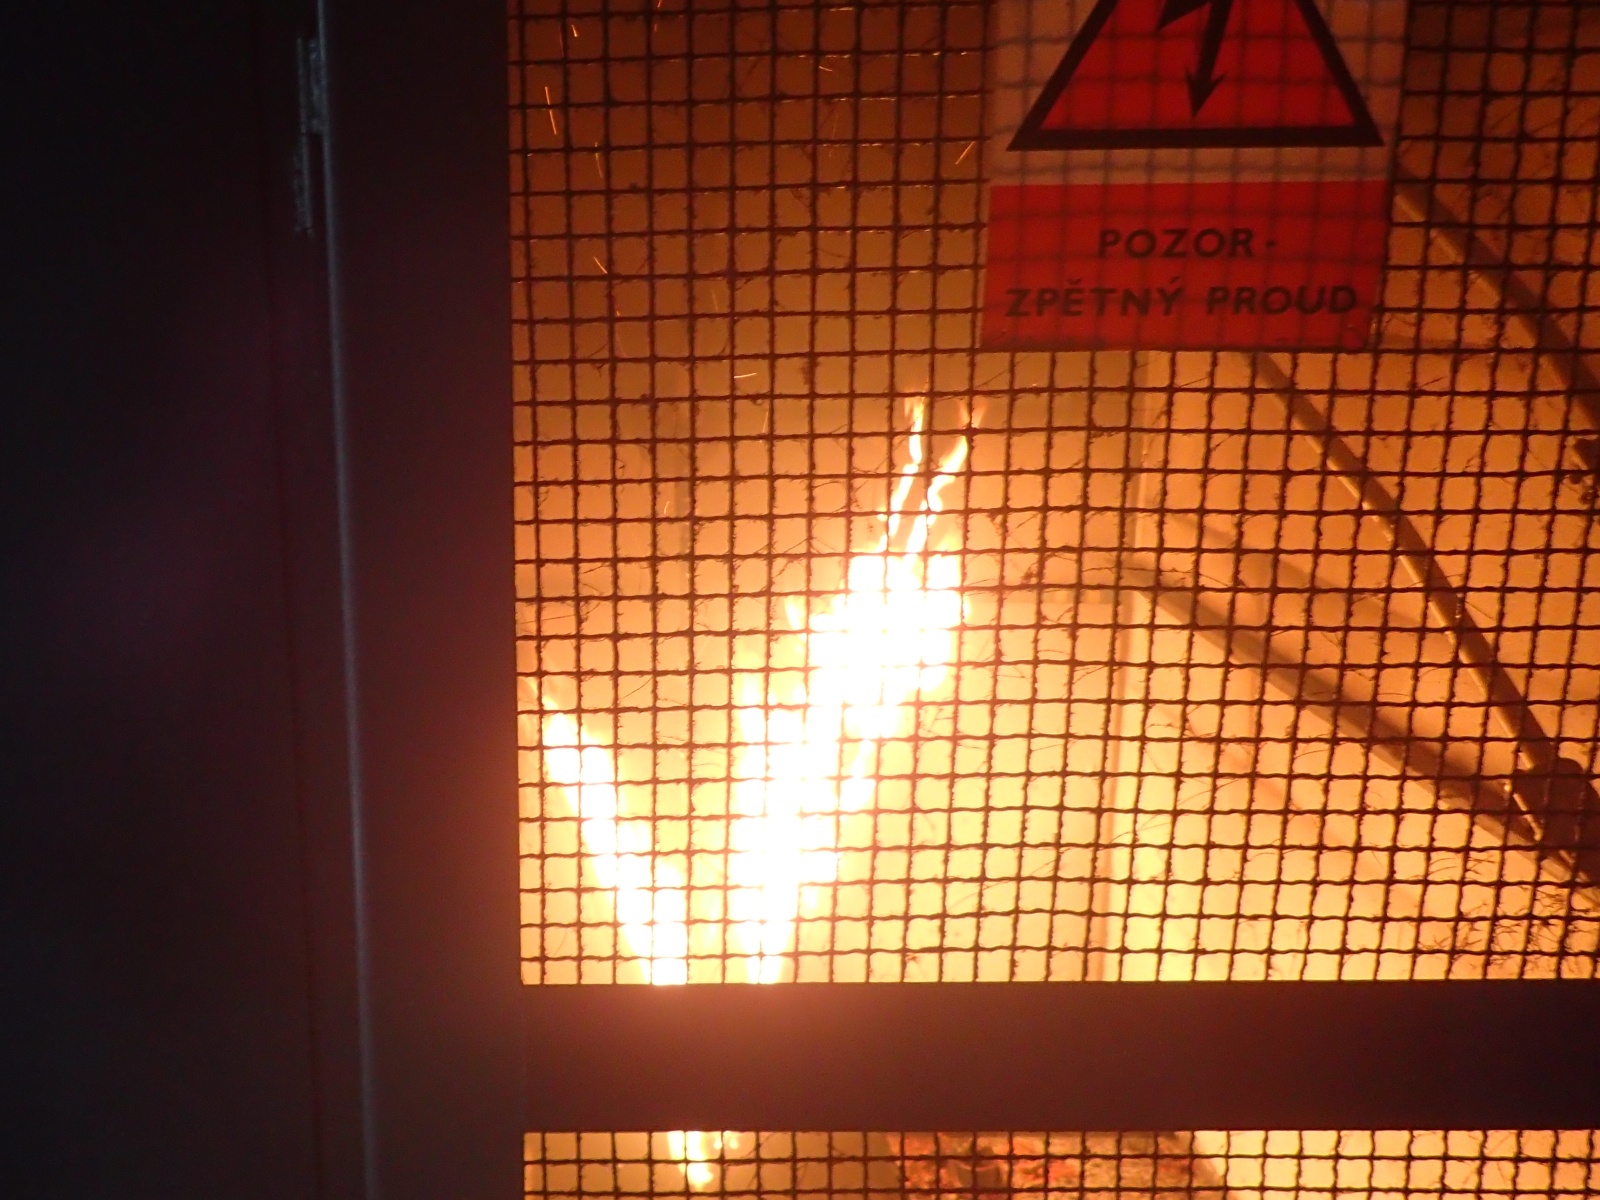 003 - požár trafostanice - plamenné hoření.JPG